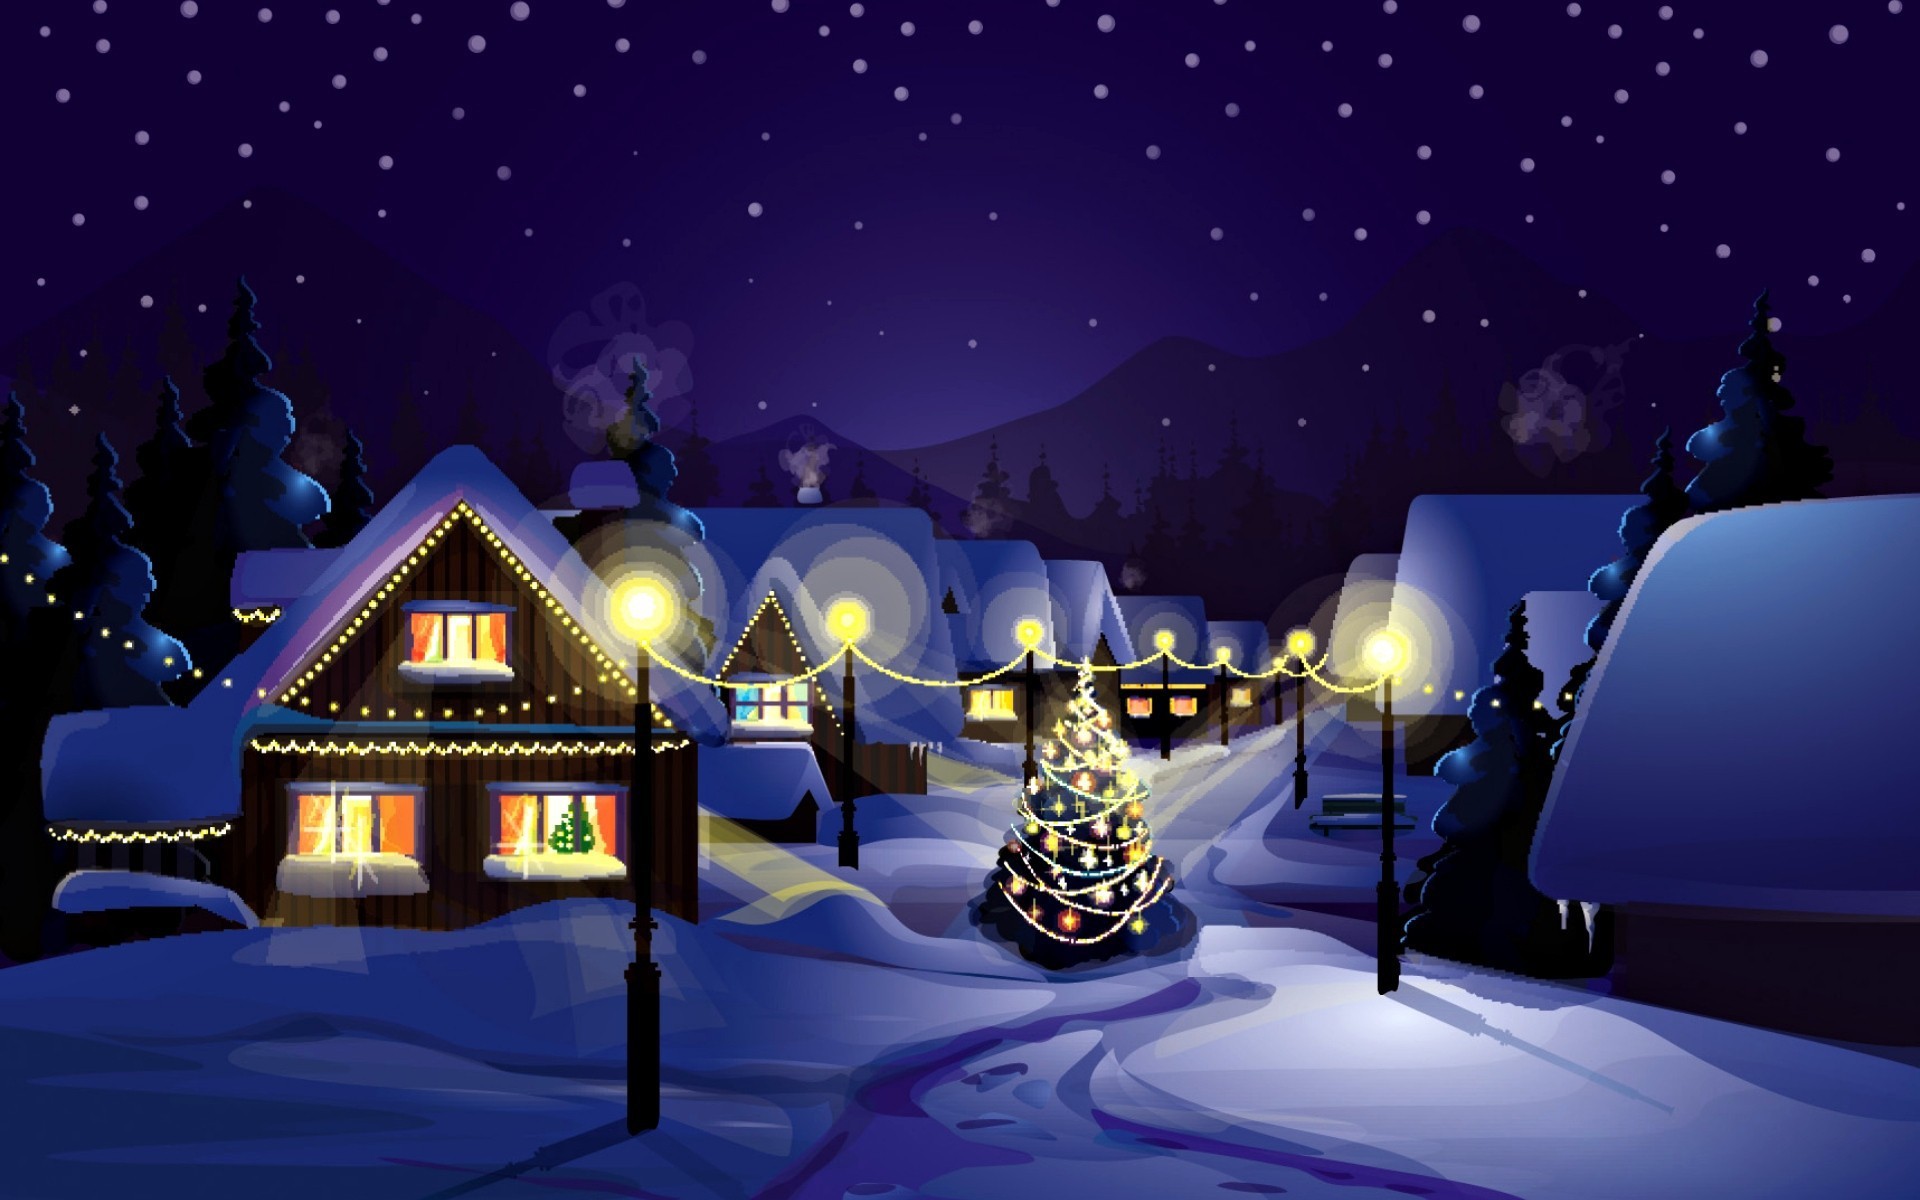 Free Animated Christmas Wallpaper For Desktop Computer - Christmas ...